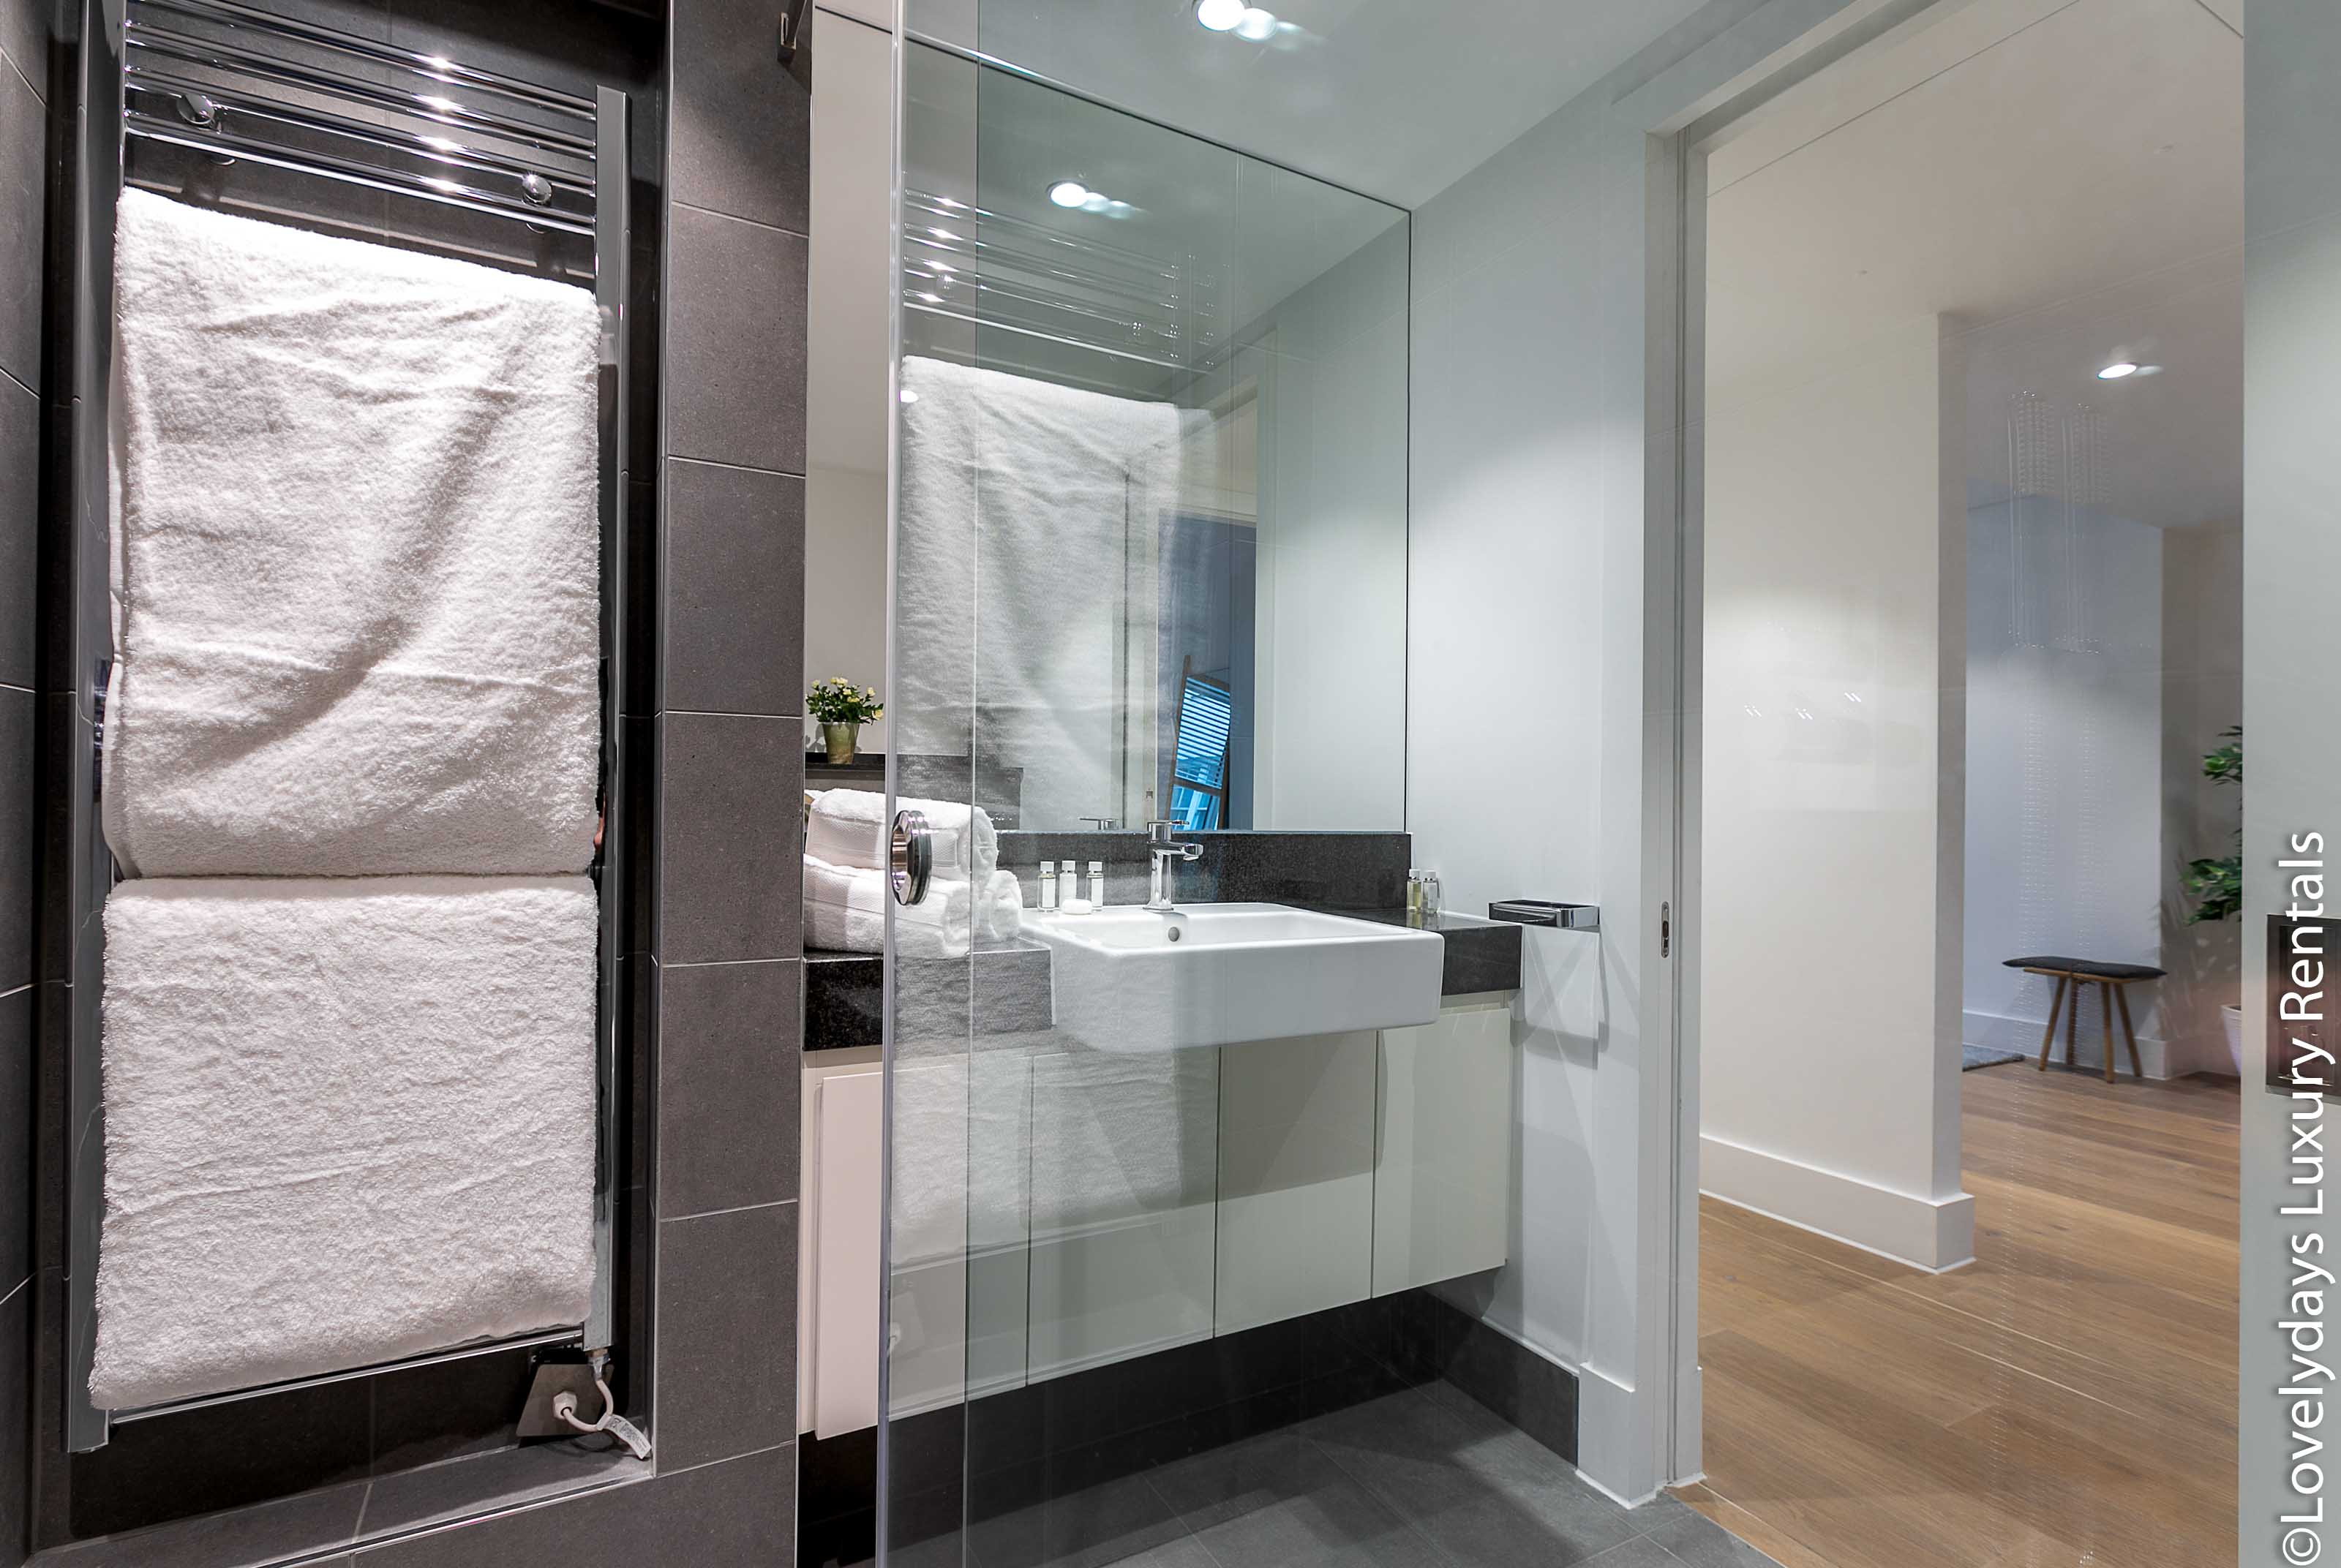 Lovelydays luxury service apartment rental - London - Covent Garden - Prince's House 601 - Lovelysuite - 2 bedrooms - 1 bathrooms - Lovely shower - f2584e0729aa - Lovelydays